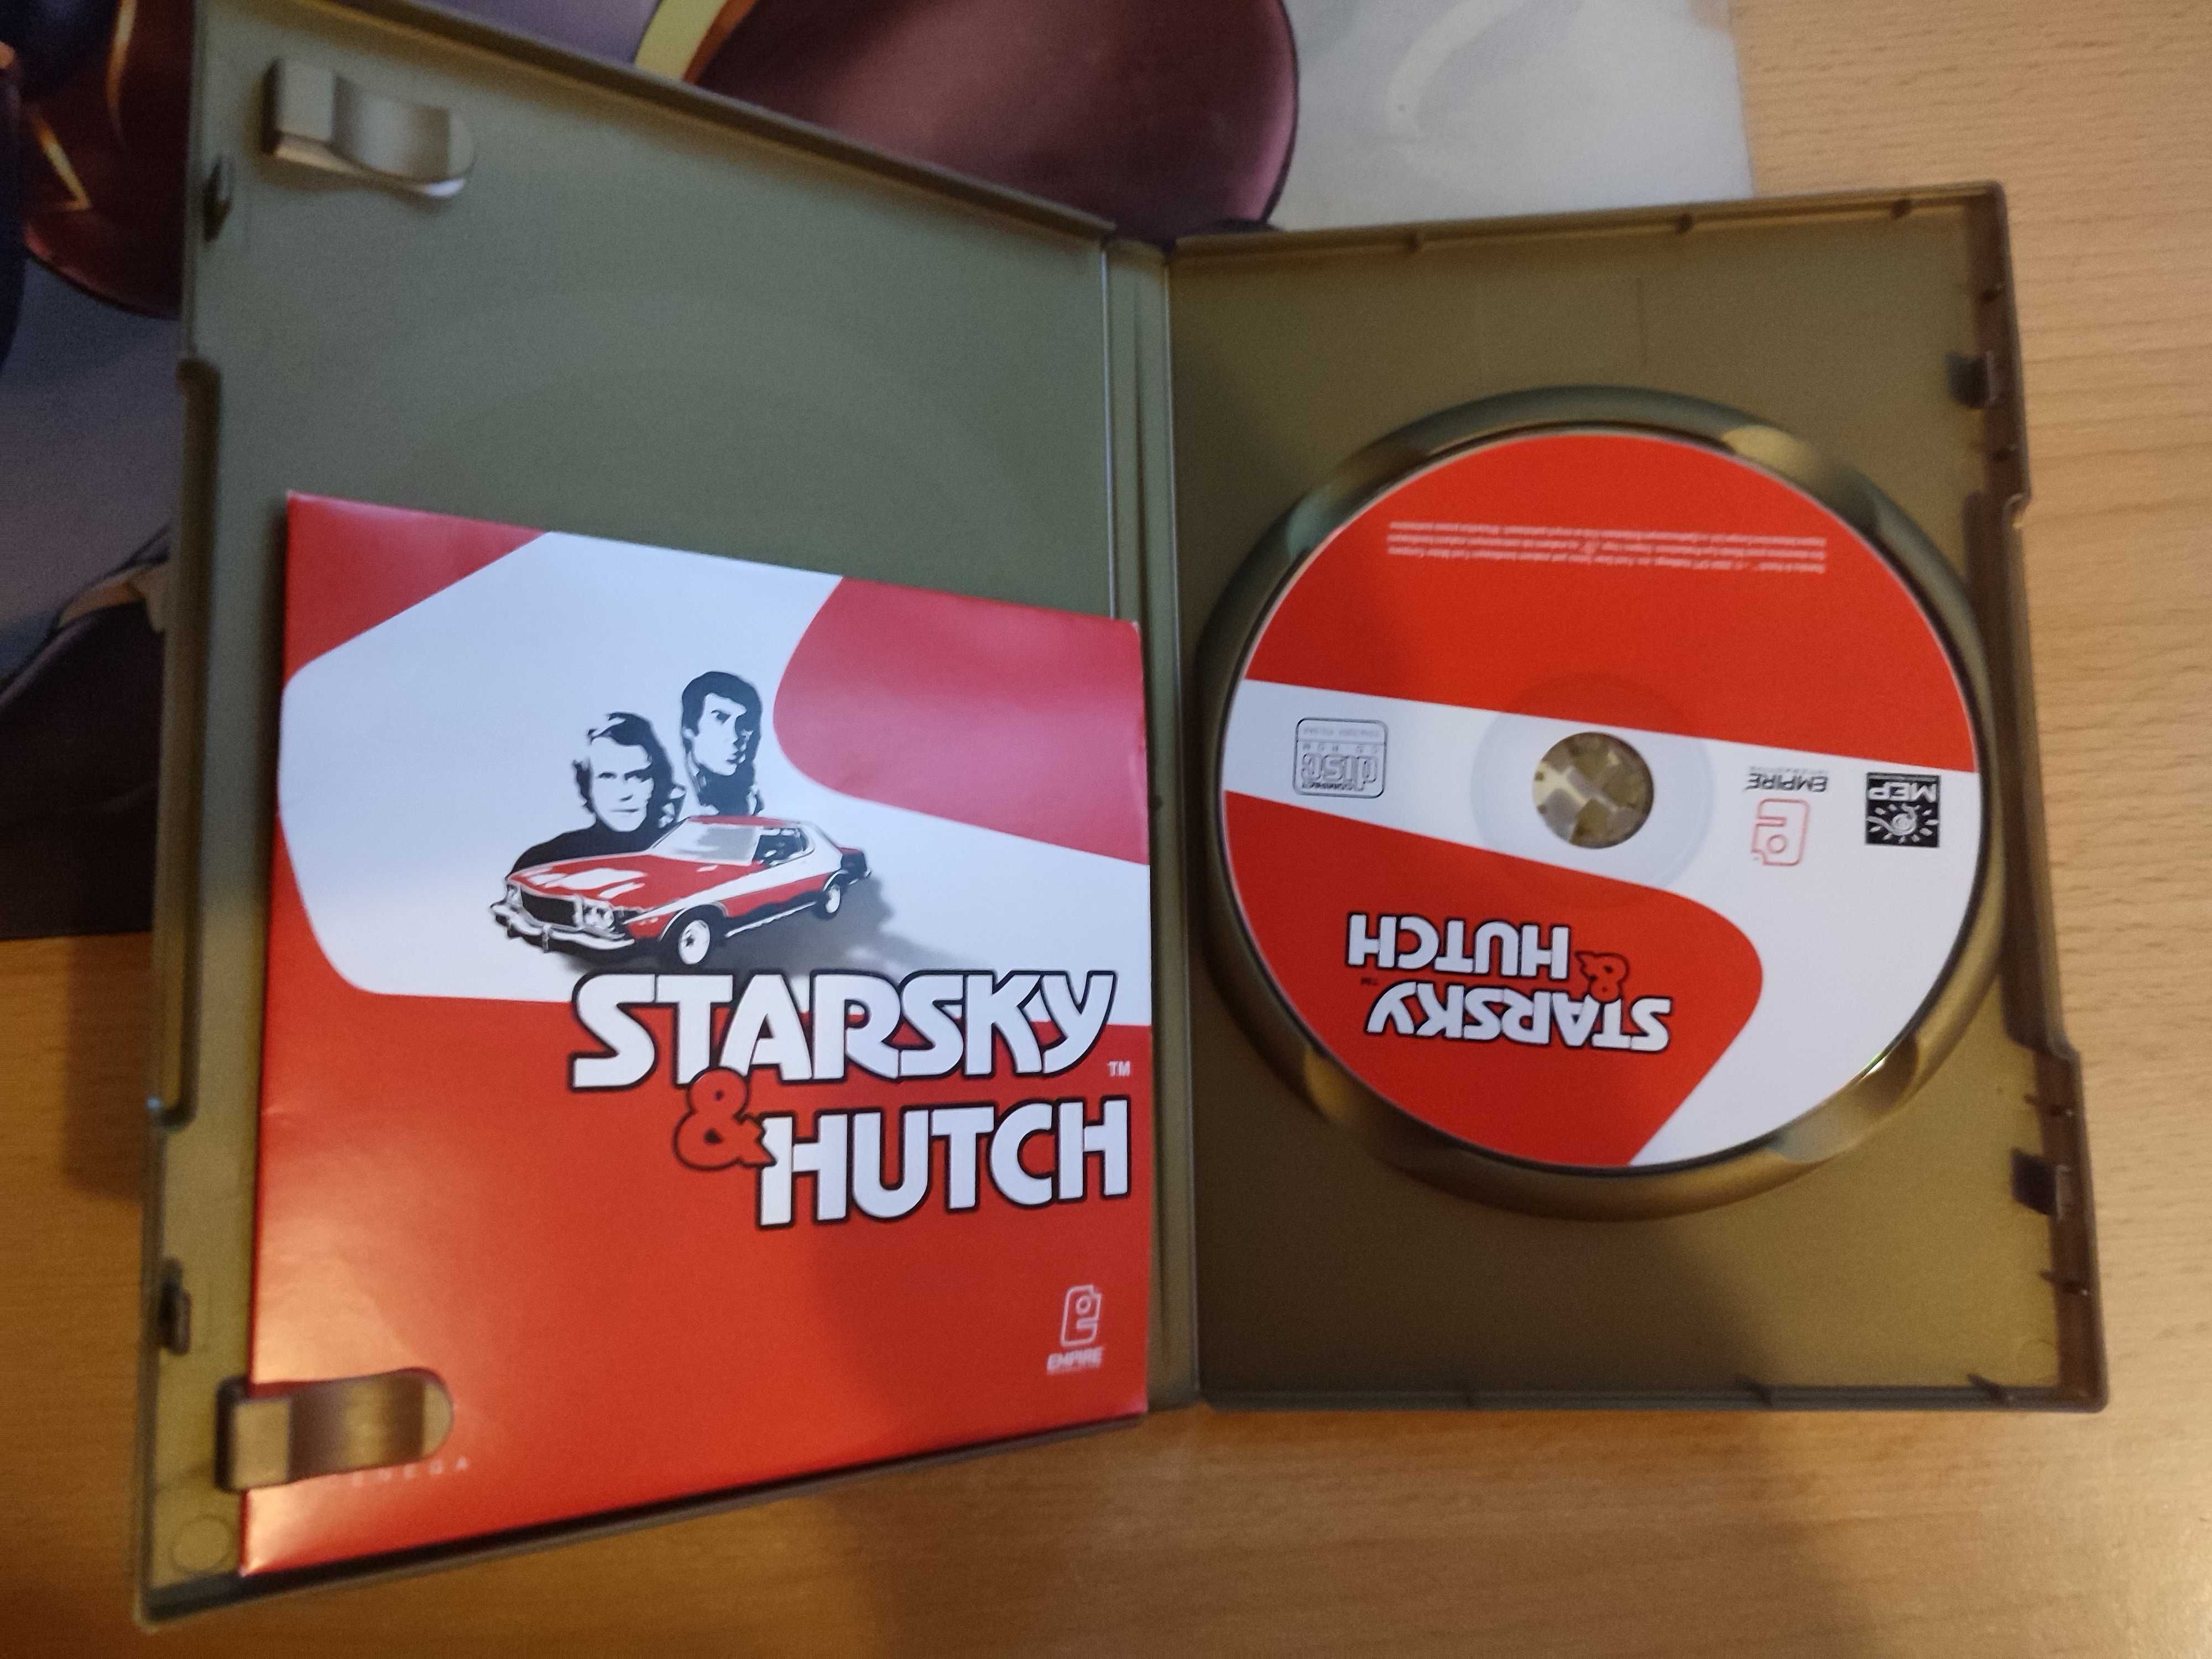 Starsky & Hutch PL